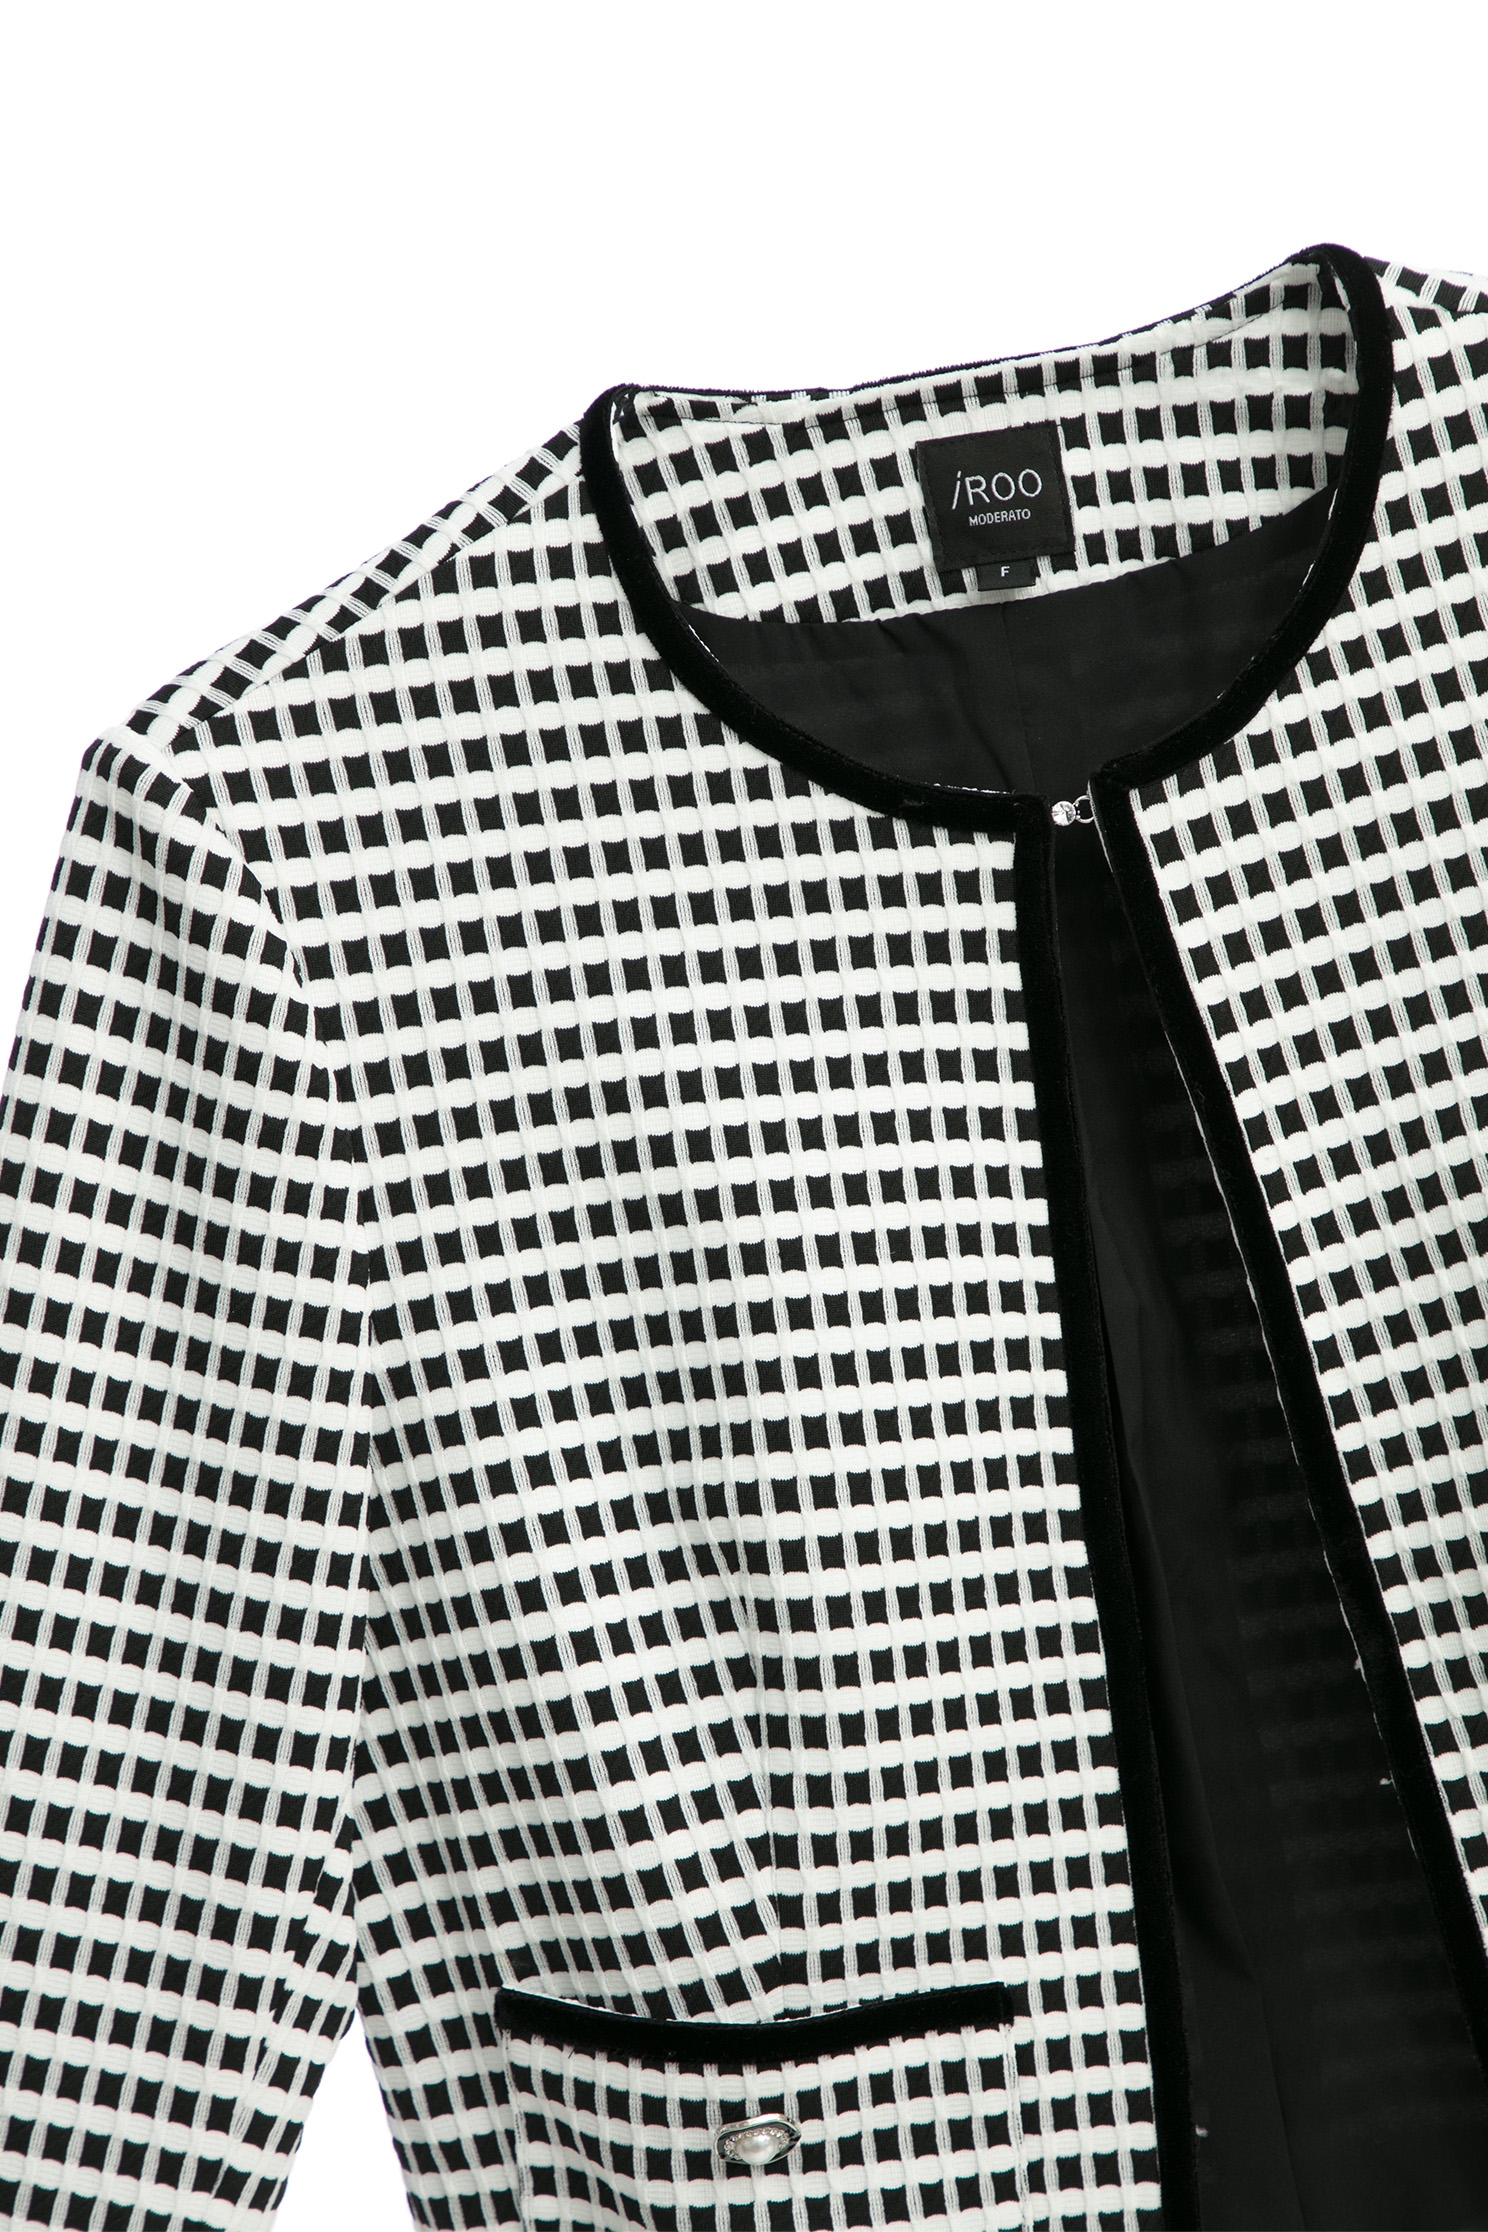 經典黑白格立體彈性短外套經典黑白格立體彈性短外套,一般外套,外套,春夏穿搭,時髦成套搭配,珍珠,針織